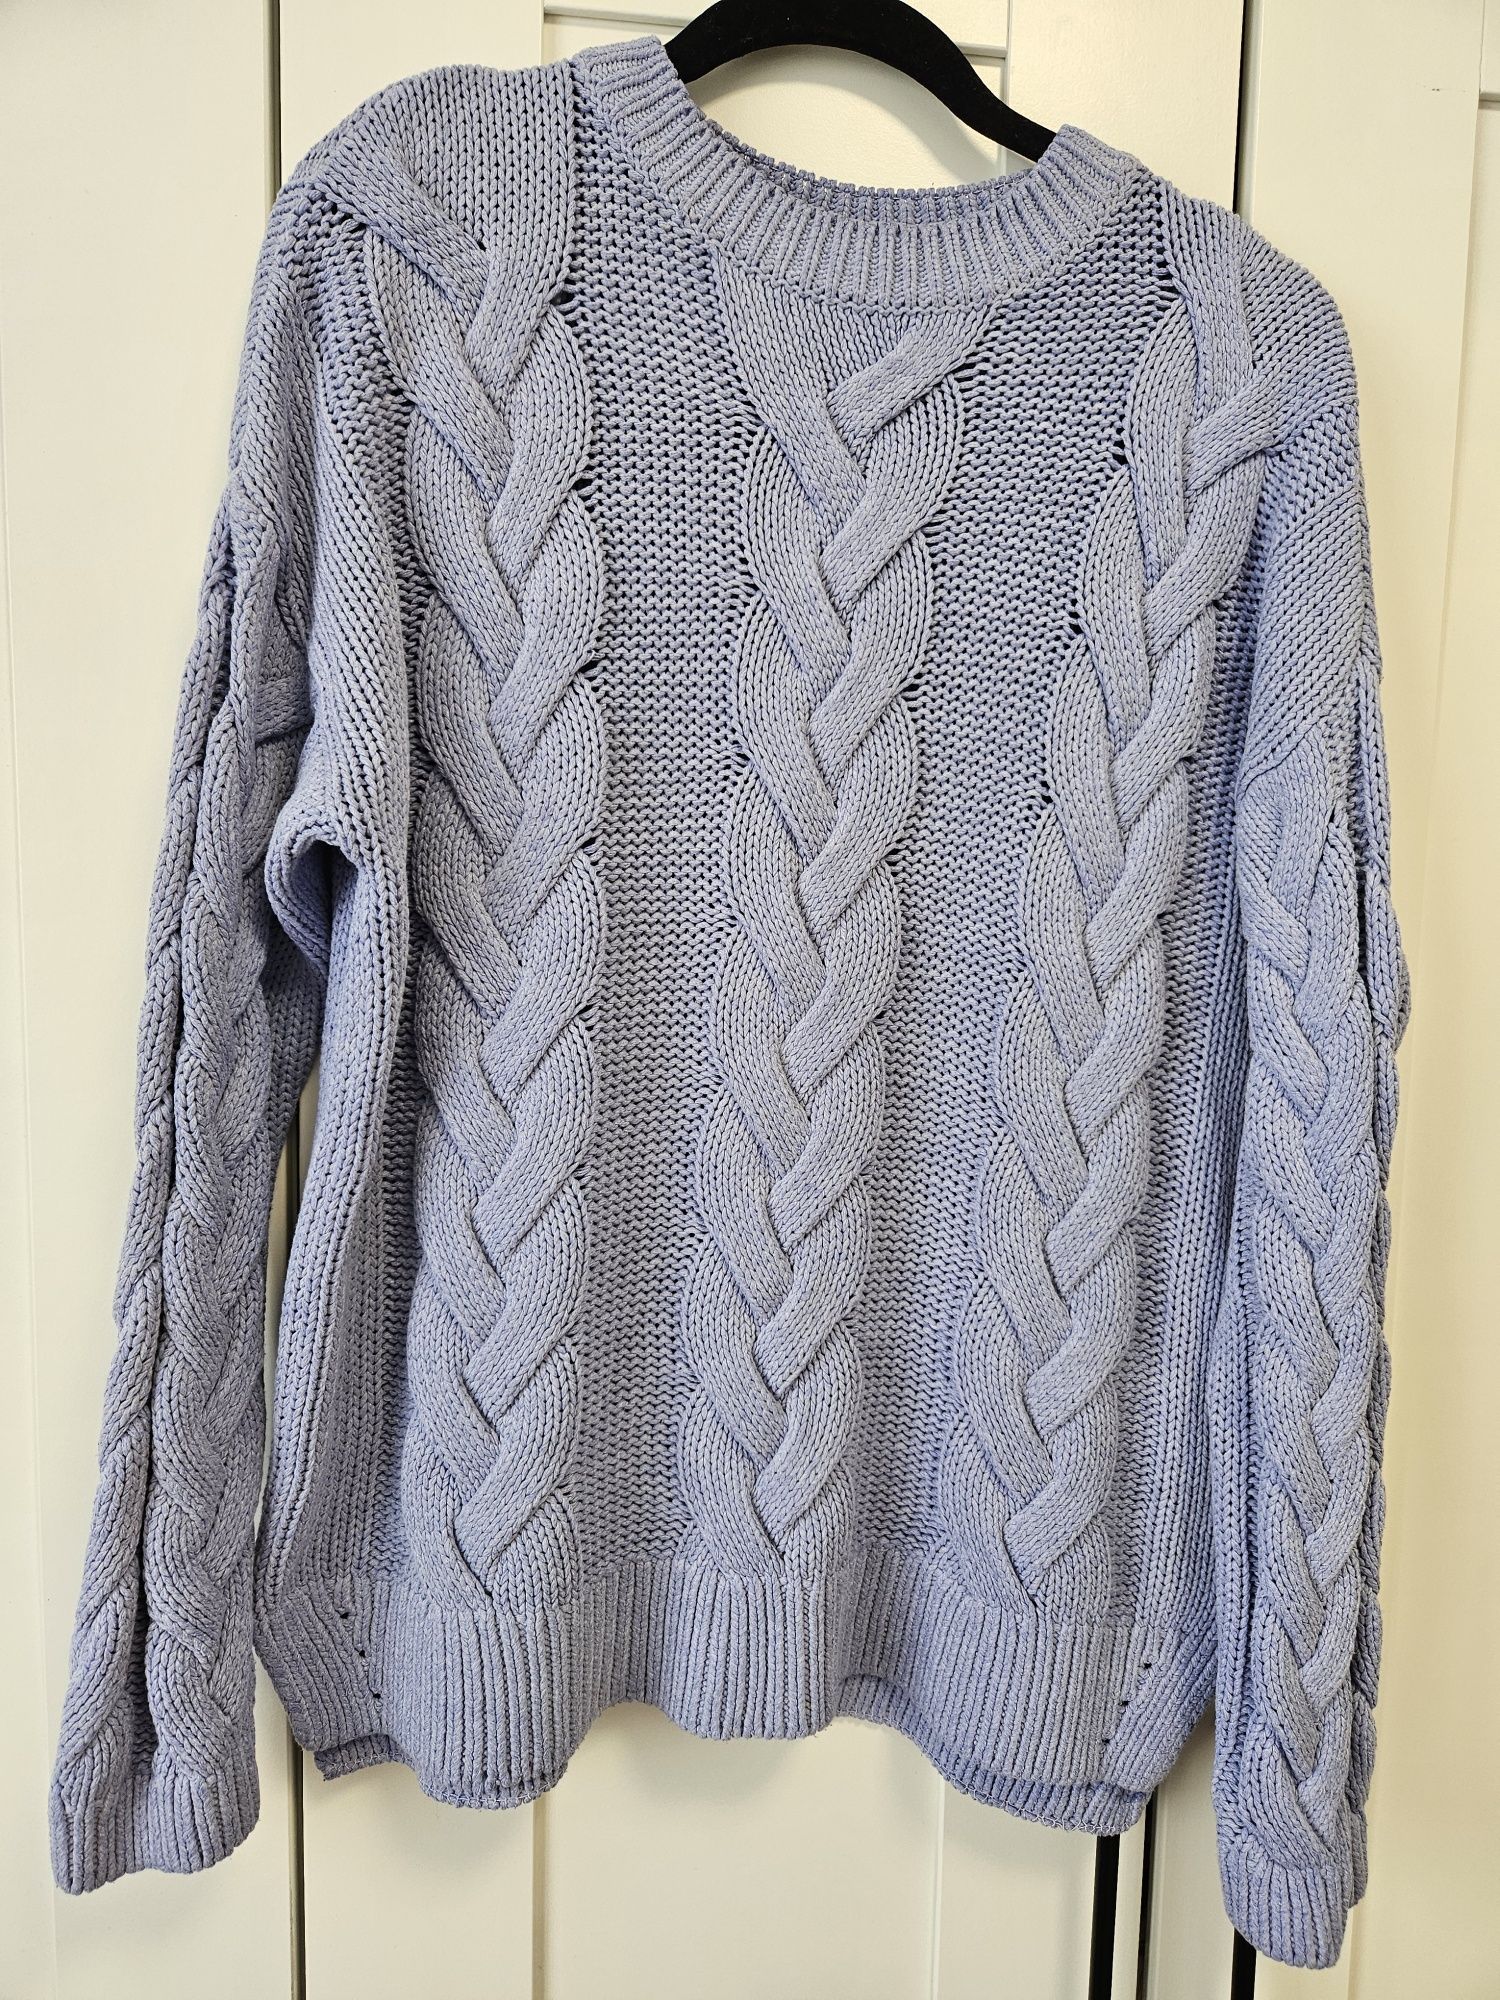 Pulover tricotat 
Marimea S, oversize
Stare impecabila